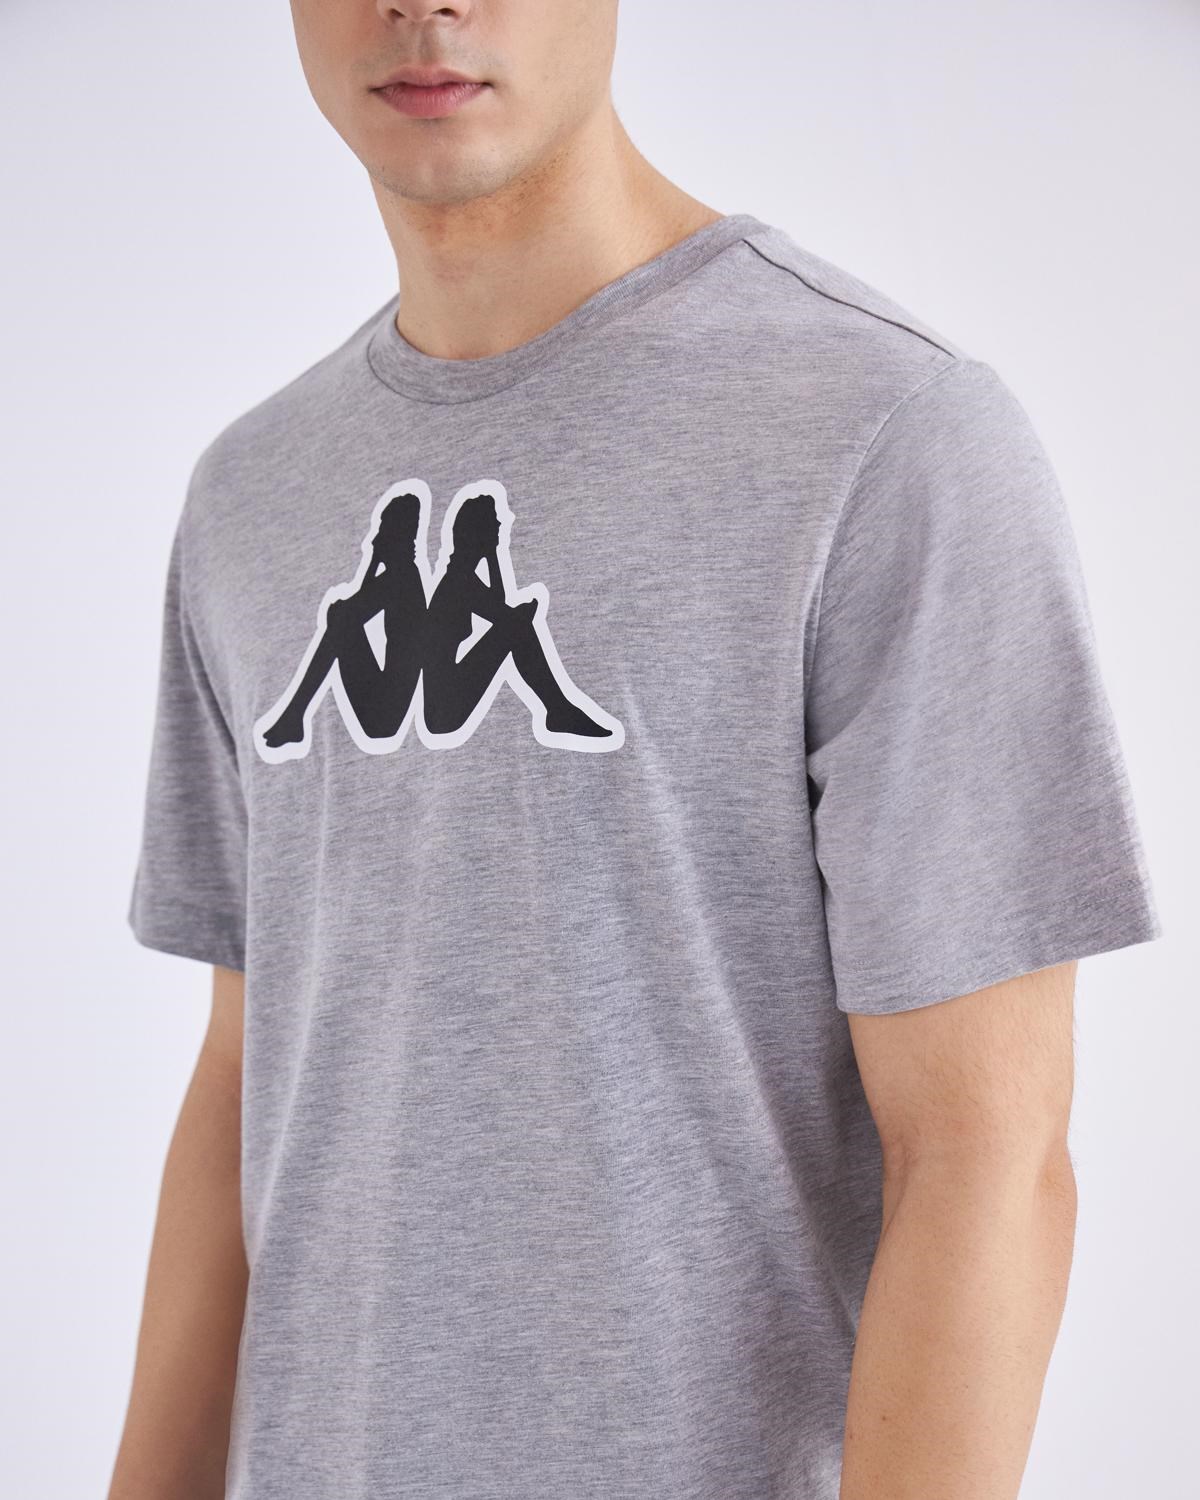 Kappa Erkek T-Shirt 331F7CW Mıd Grey Mel-Black-Whıte